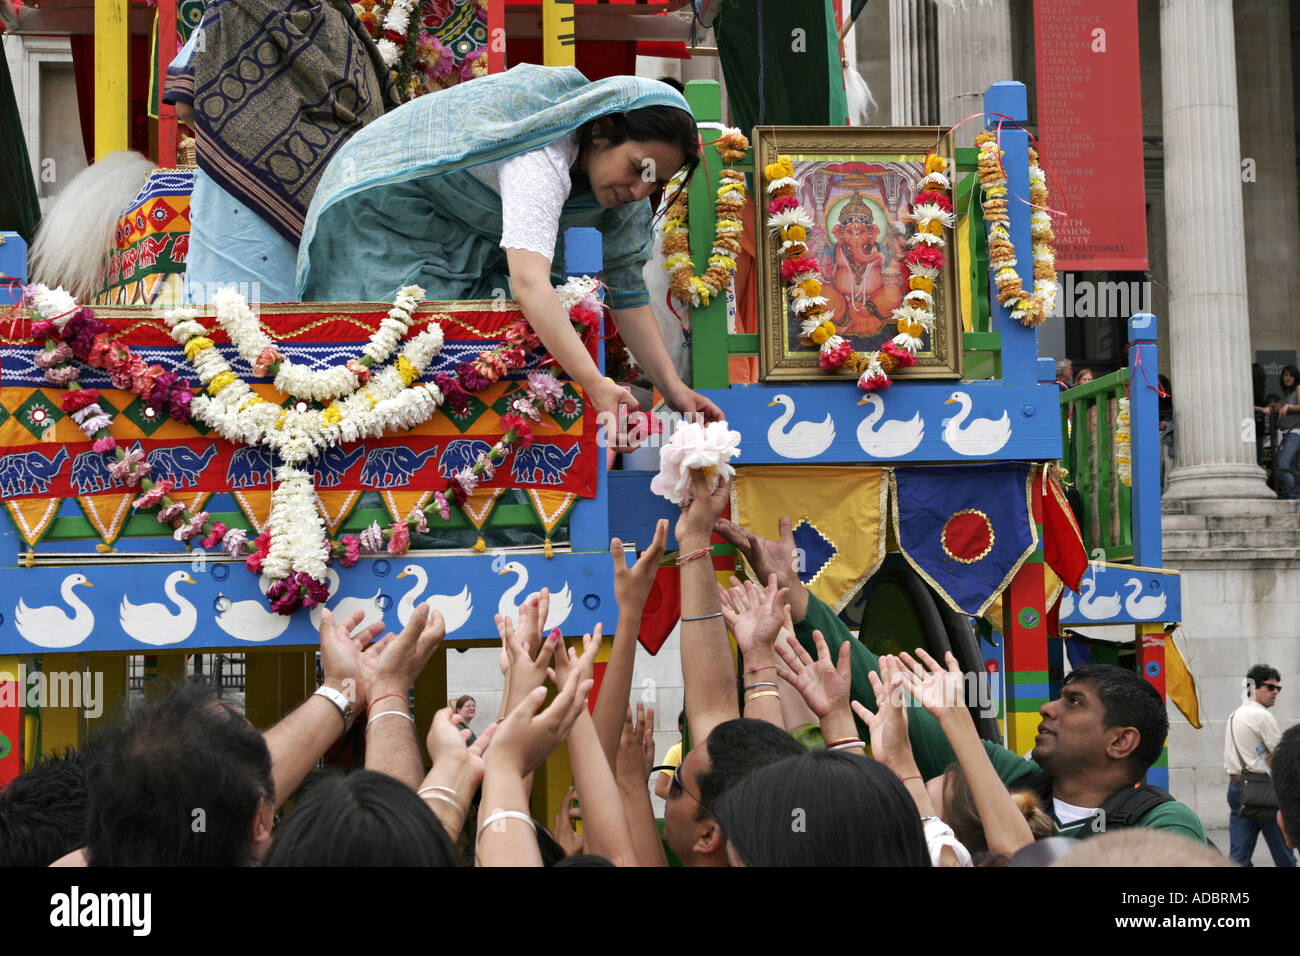 Rathayatra hindou de chars de carnaval festival Banque D'Images